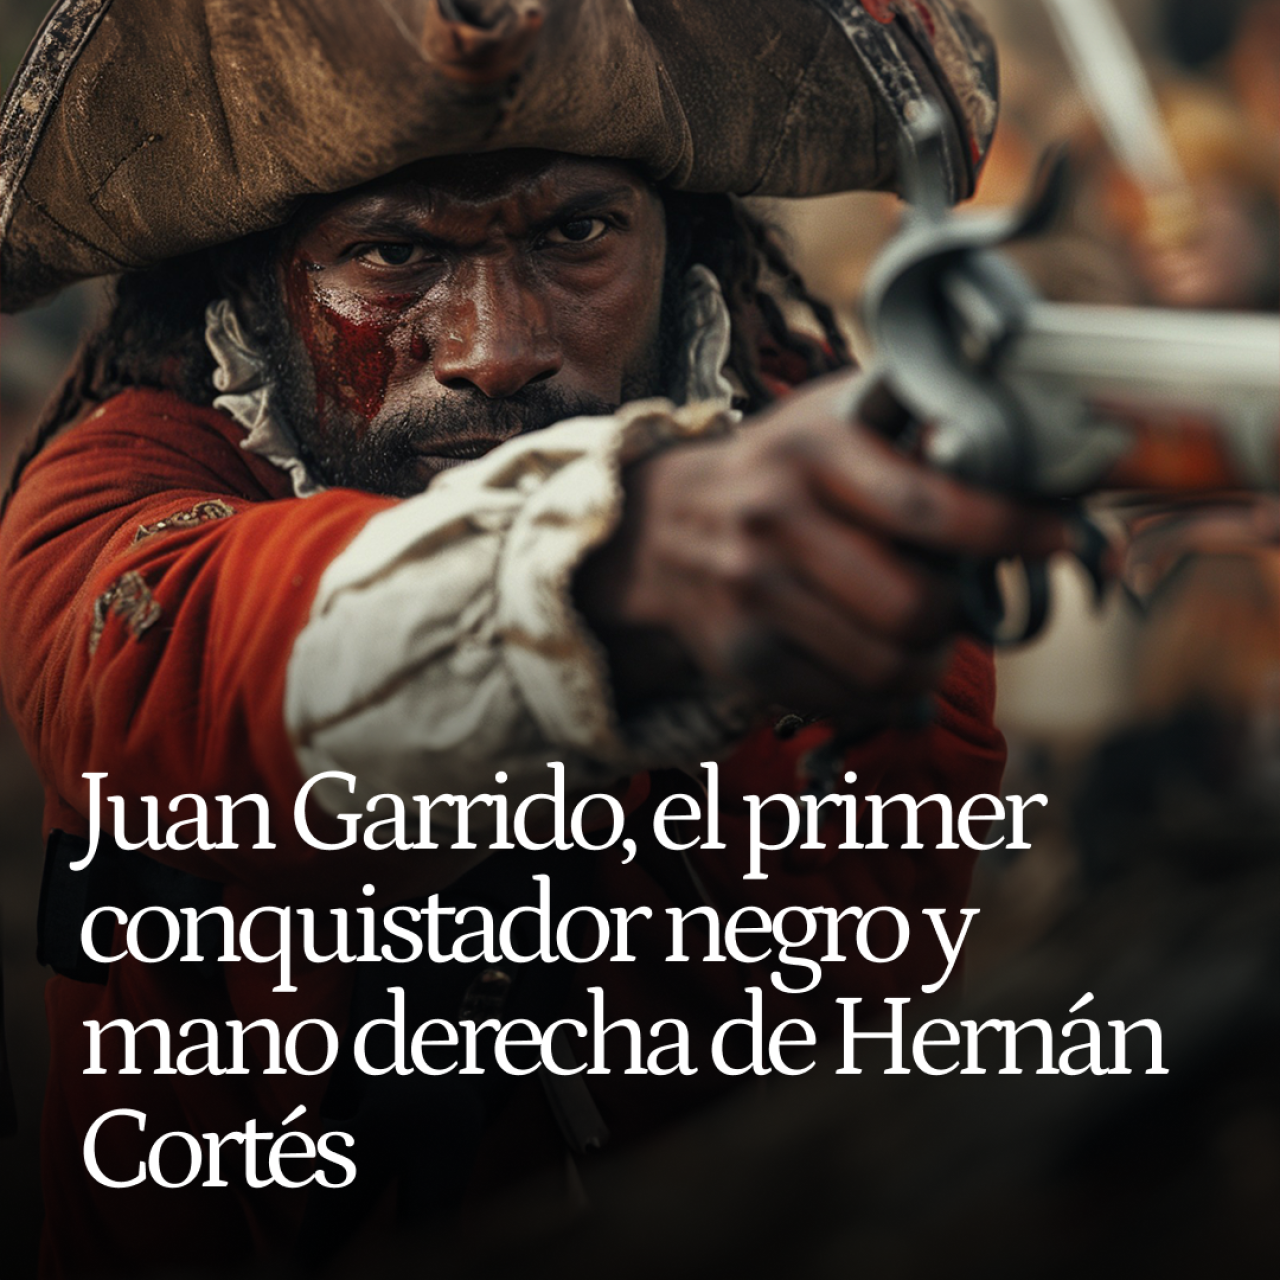 Juan Garrido, el primer conquistador negro y mano derecha de Hernán Cortés en su expedición en México